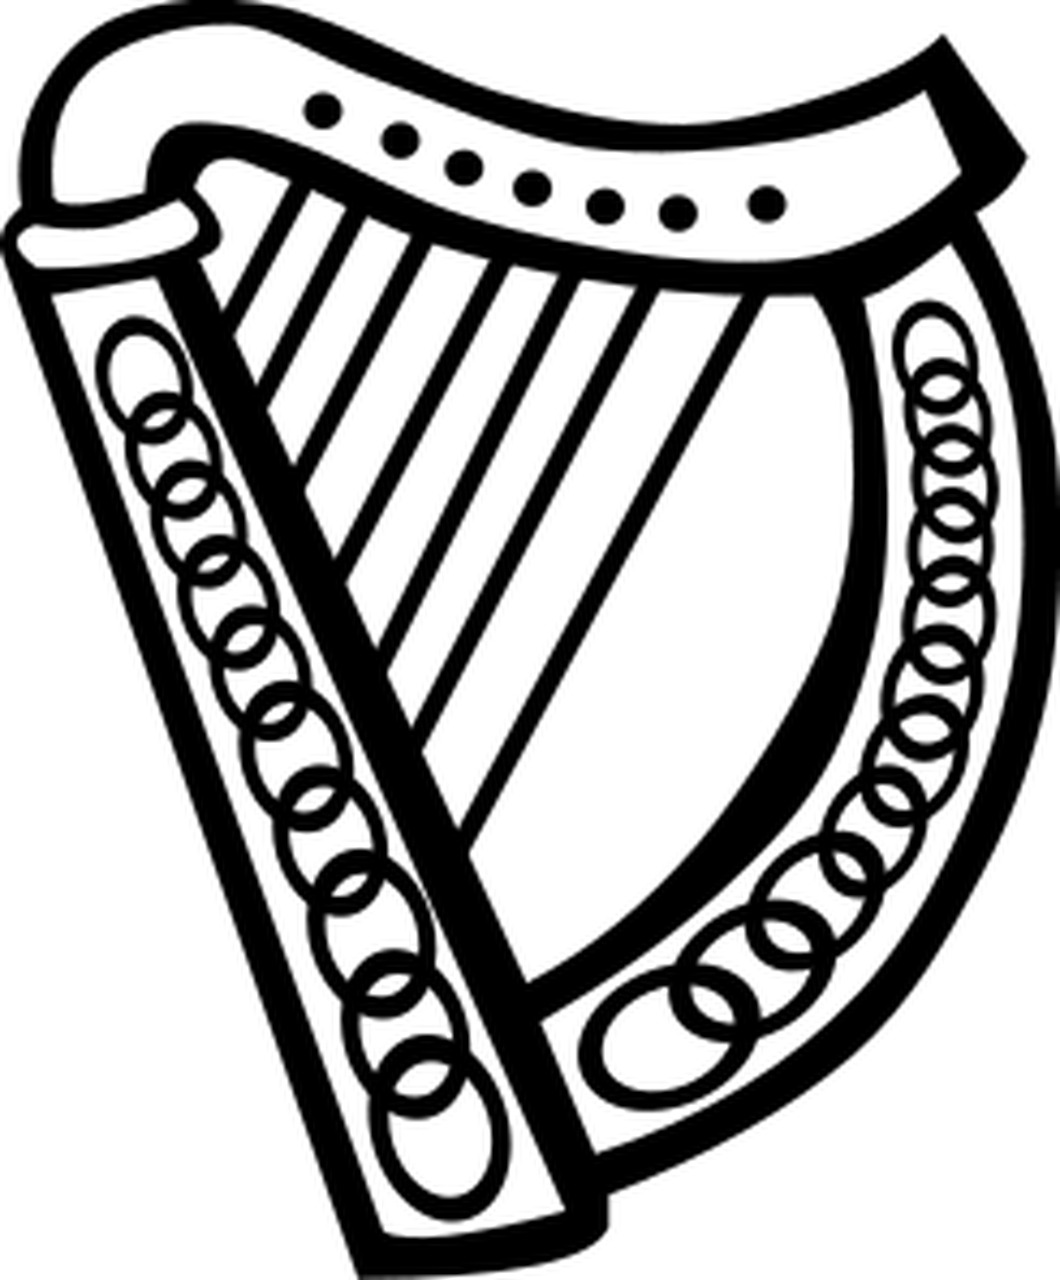 Omalovnka keltsk harfa k vytisknut na A4